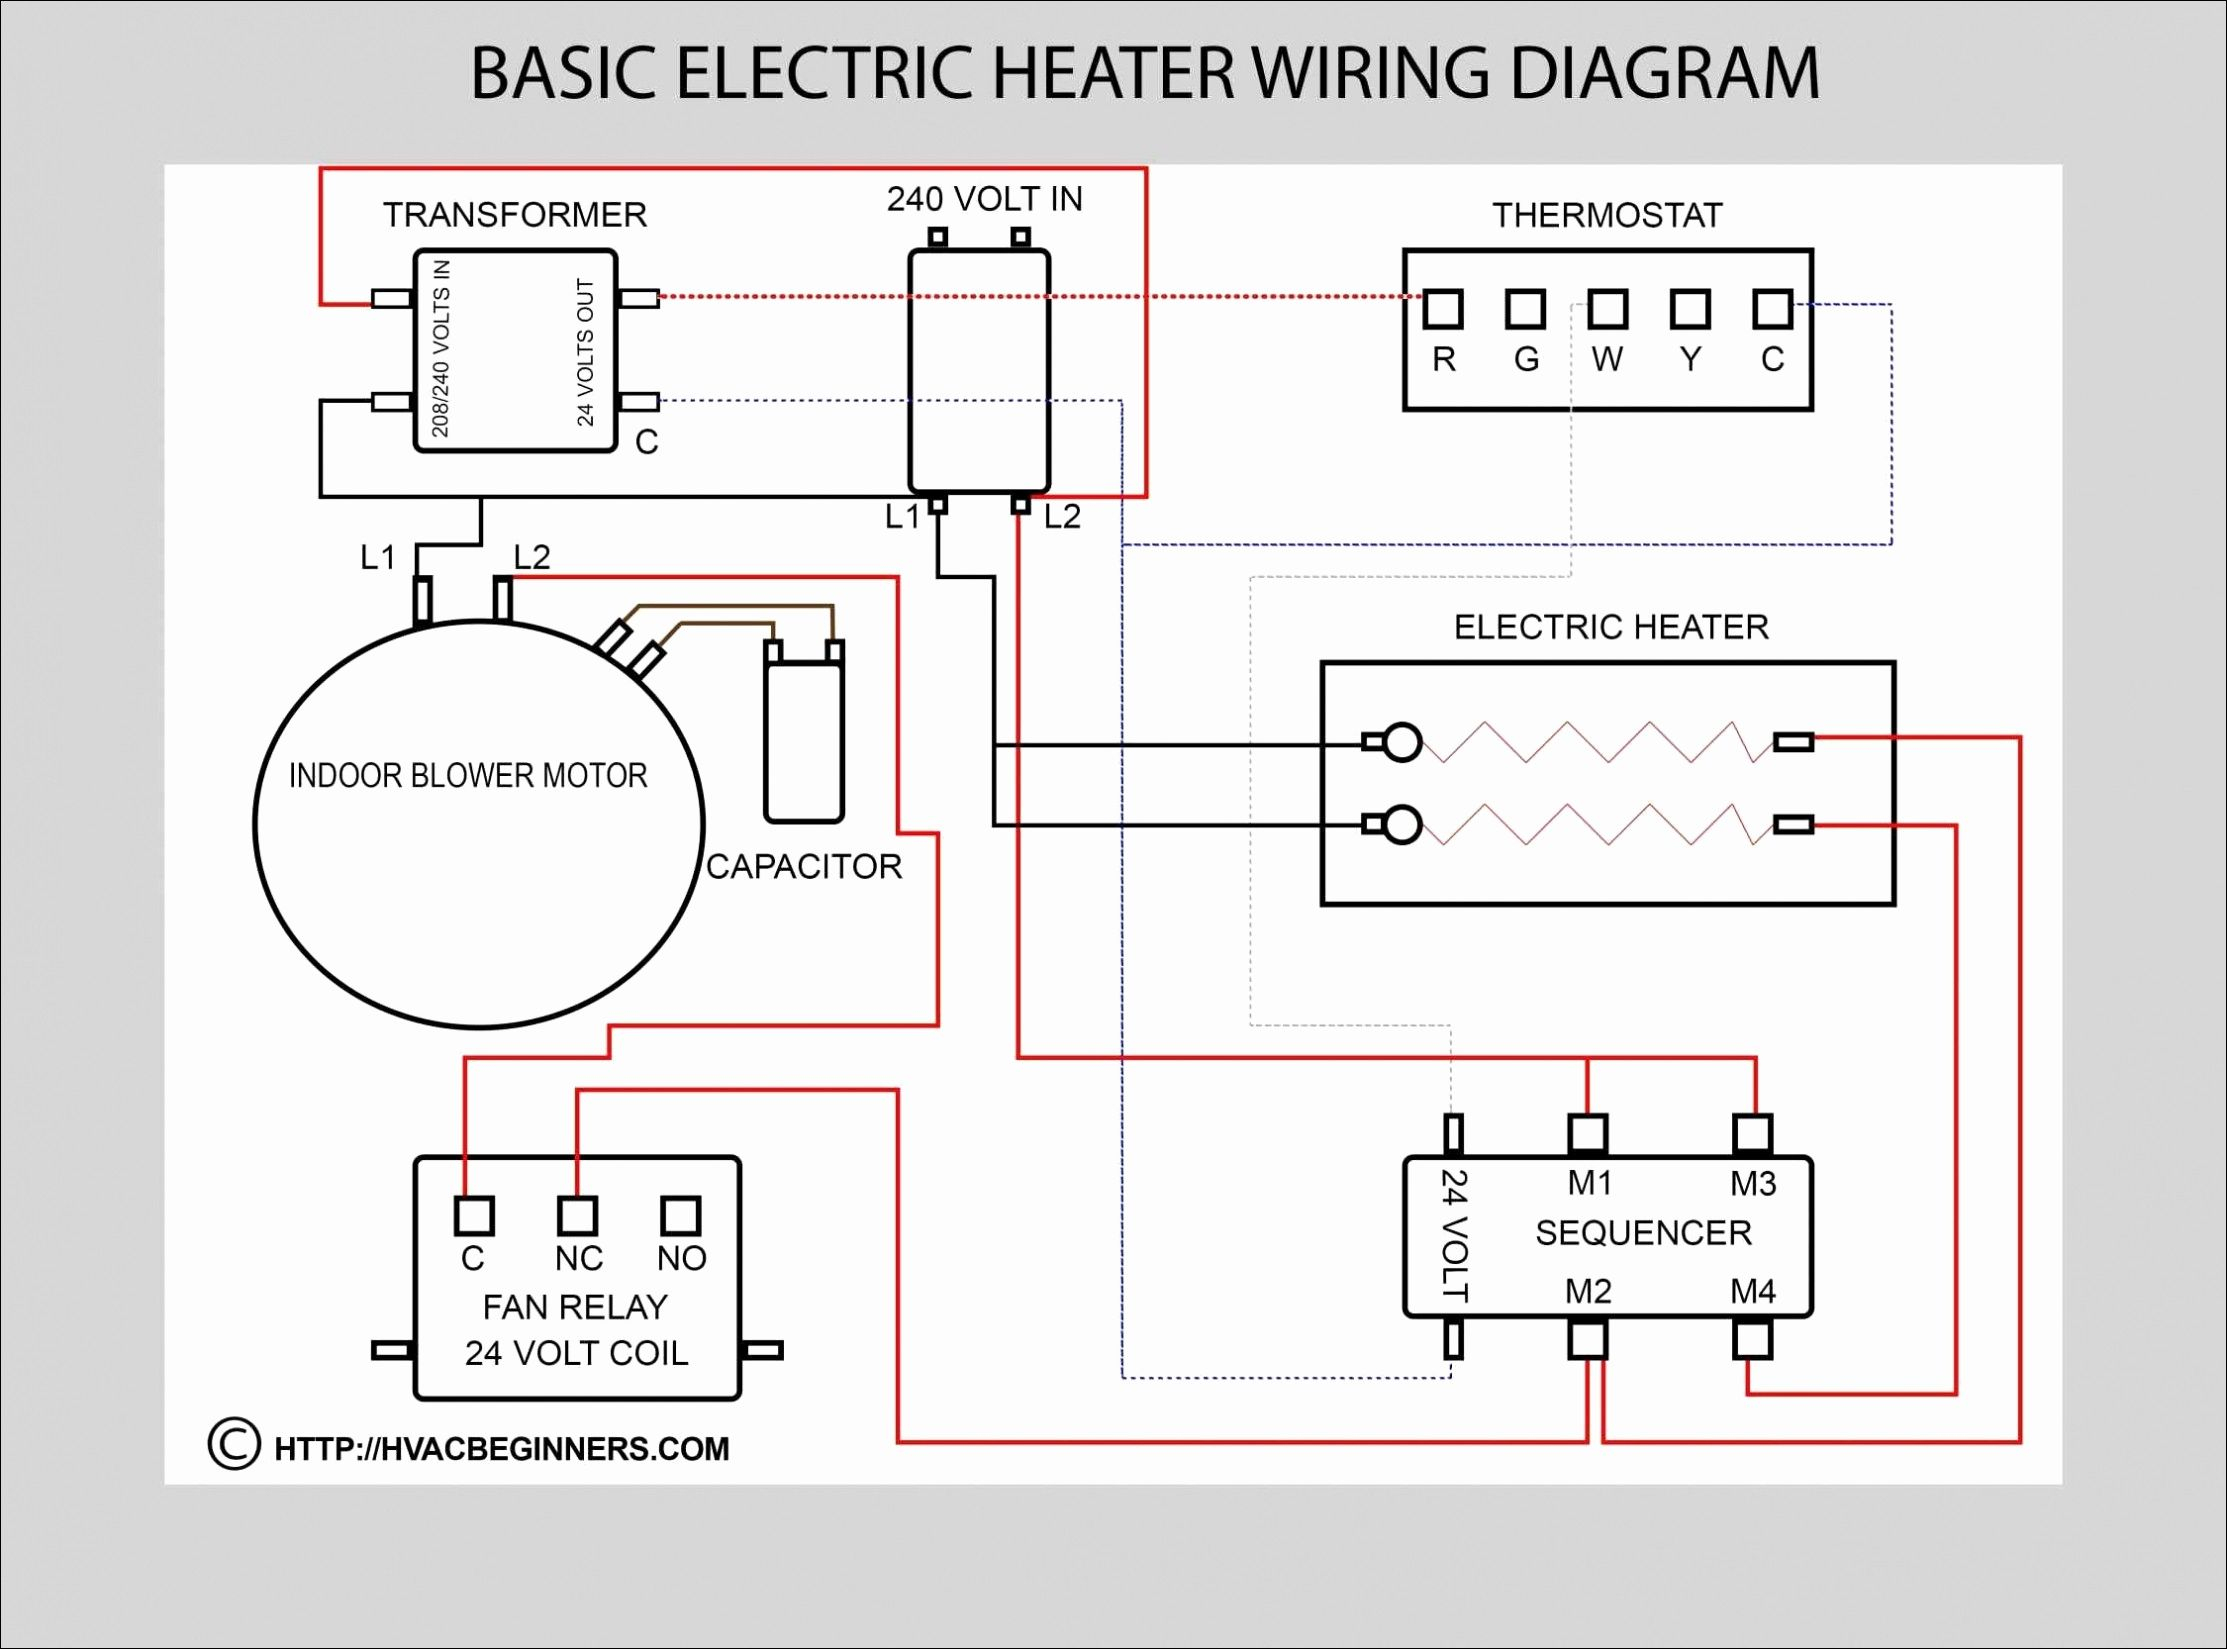 Universal Power Window Wiring Schematic | Wiring Diagram - 5 Pin Power Window Switch Wiring Diagram